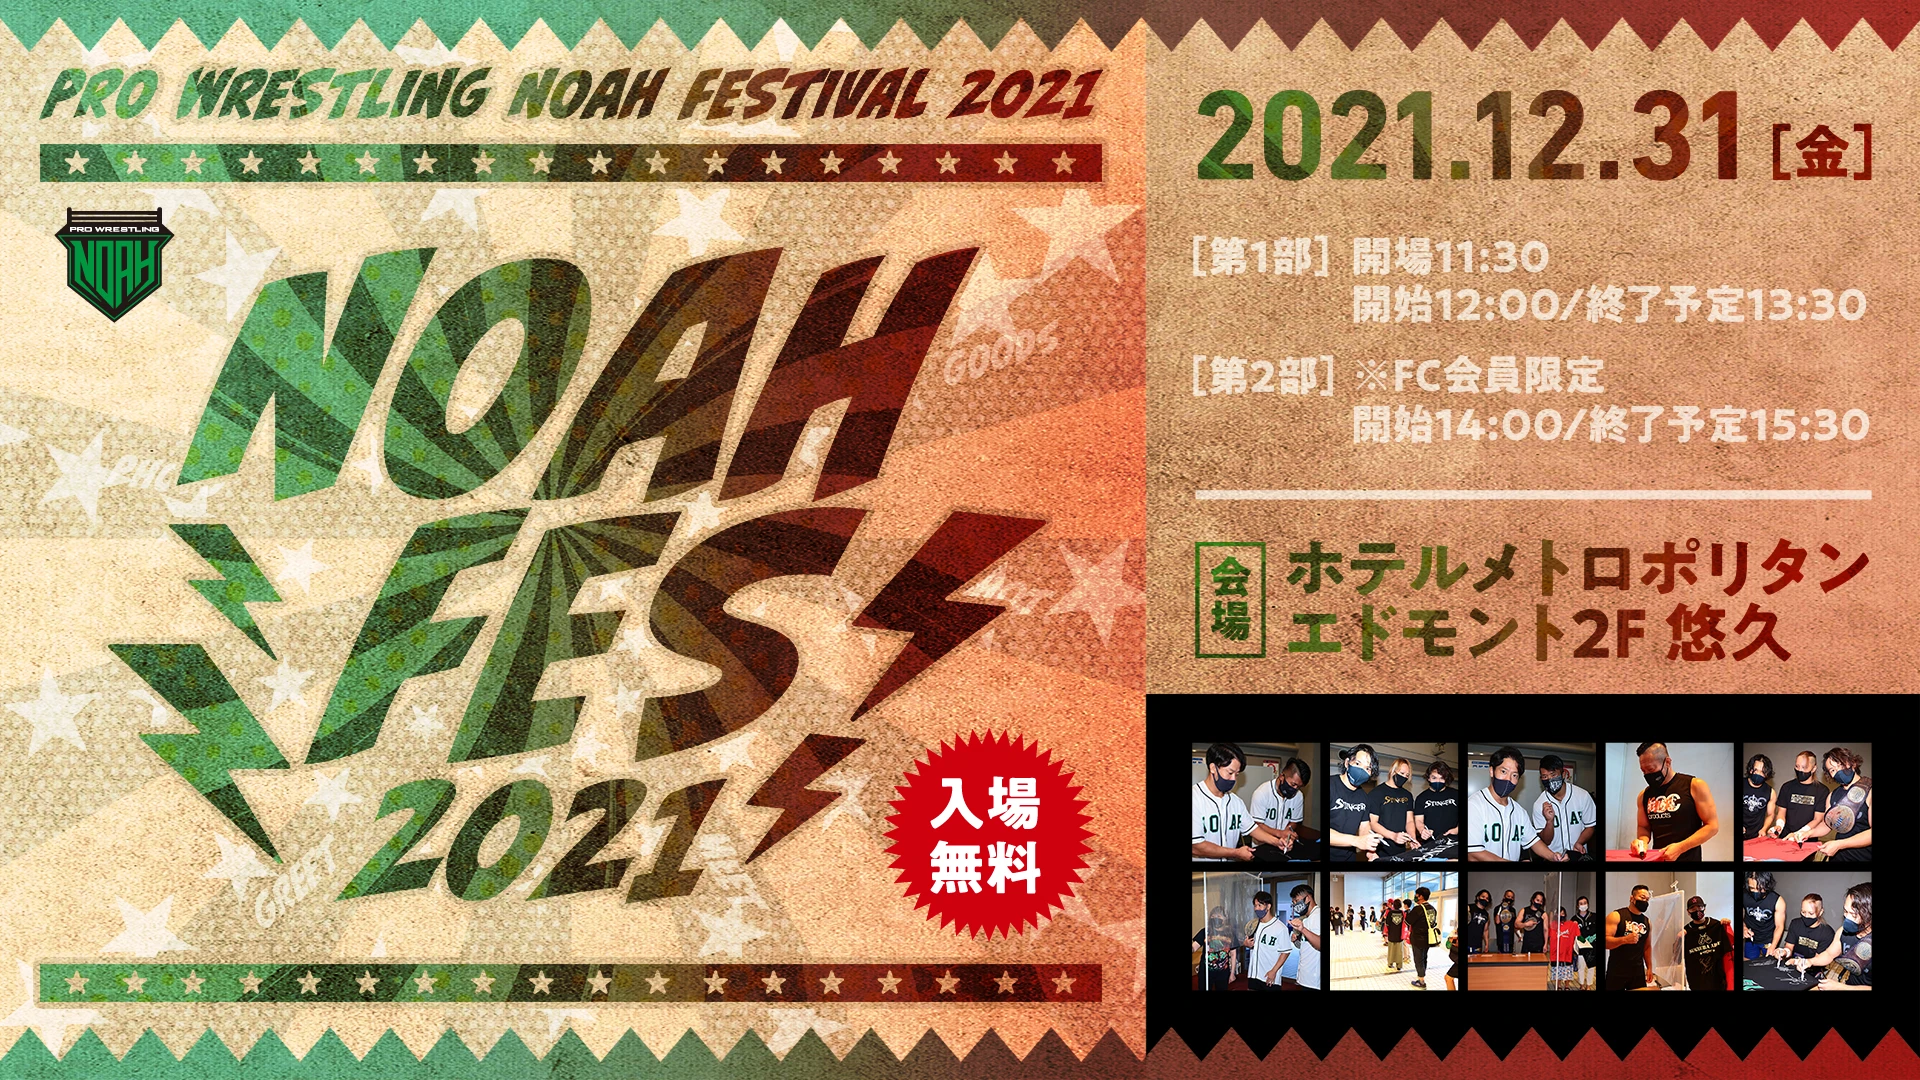 【NOAH FES 2021情報 第2弾】12月31日開催 NOAH FES 2021参加選手のお知らせ